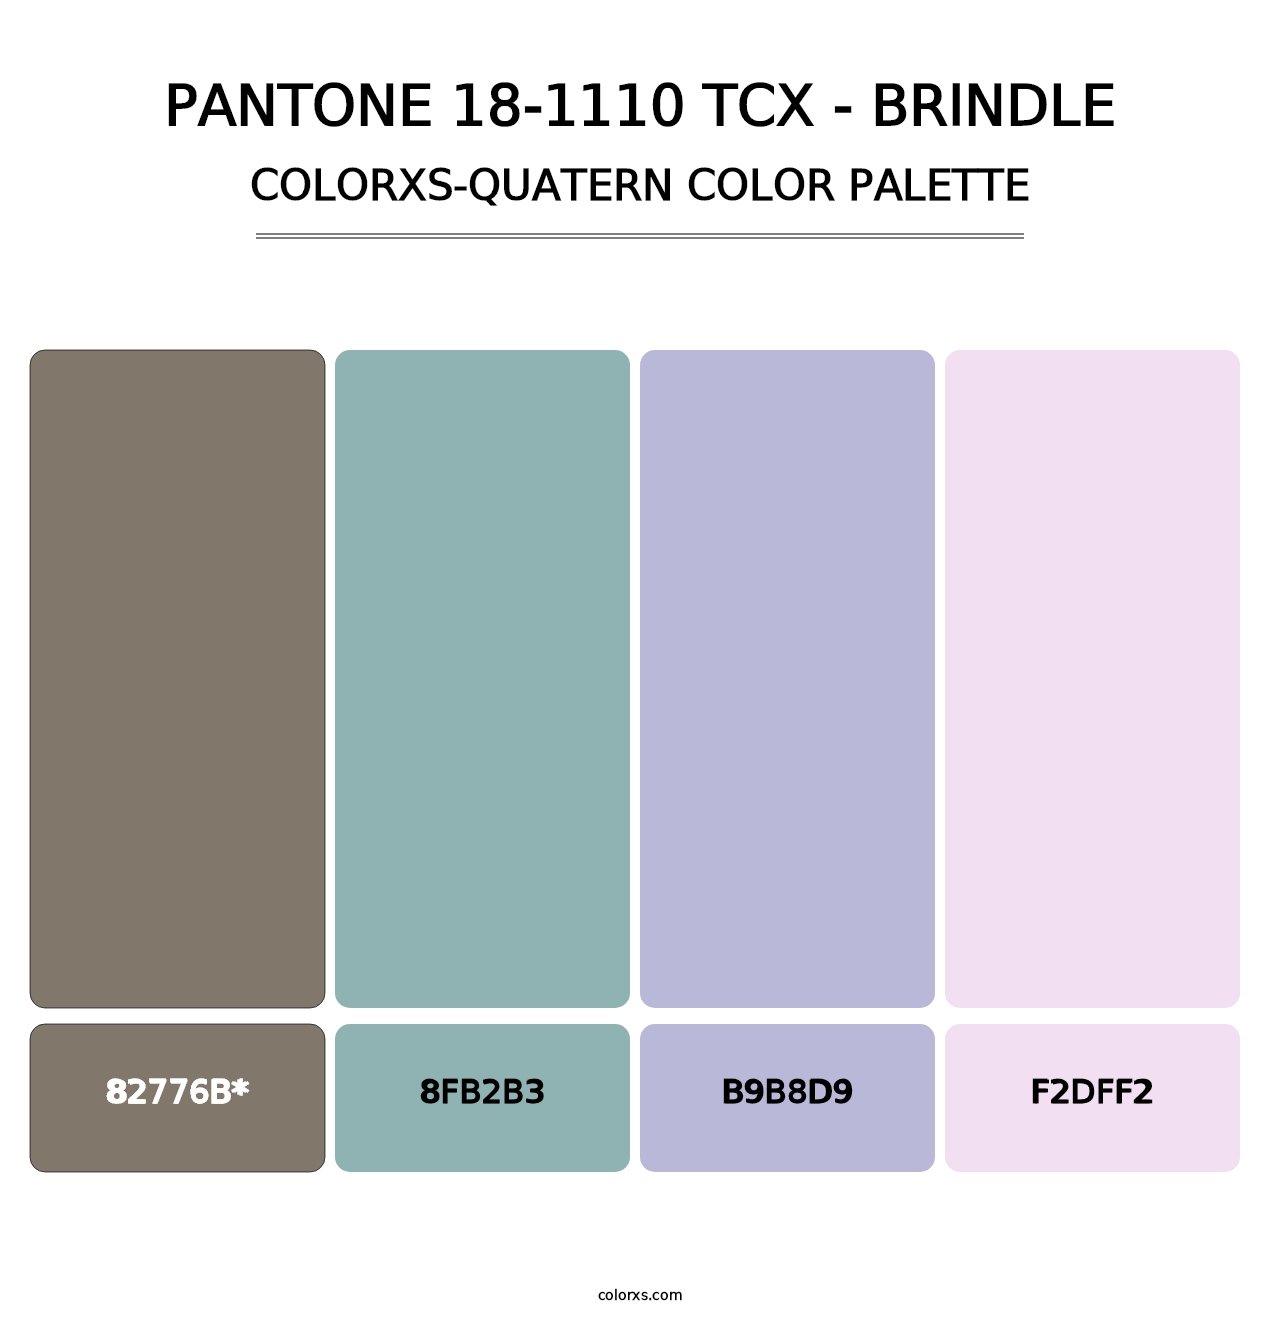 PANTONE 18-1110 TCX - Brindle - Colorxs Quatern Palette